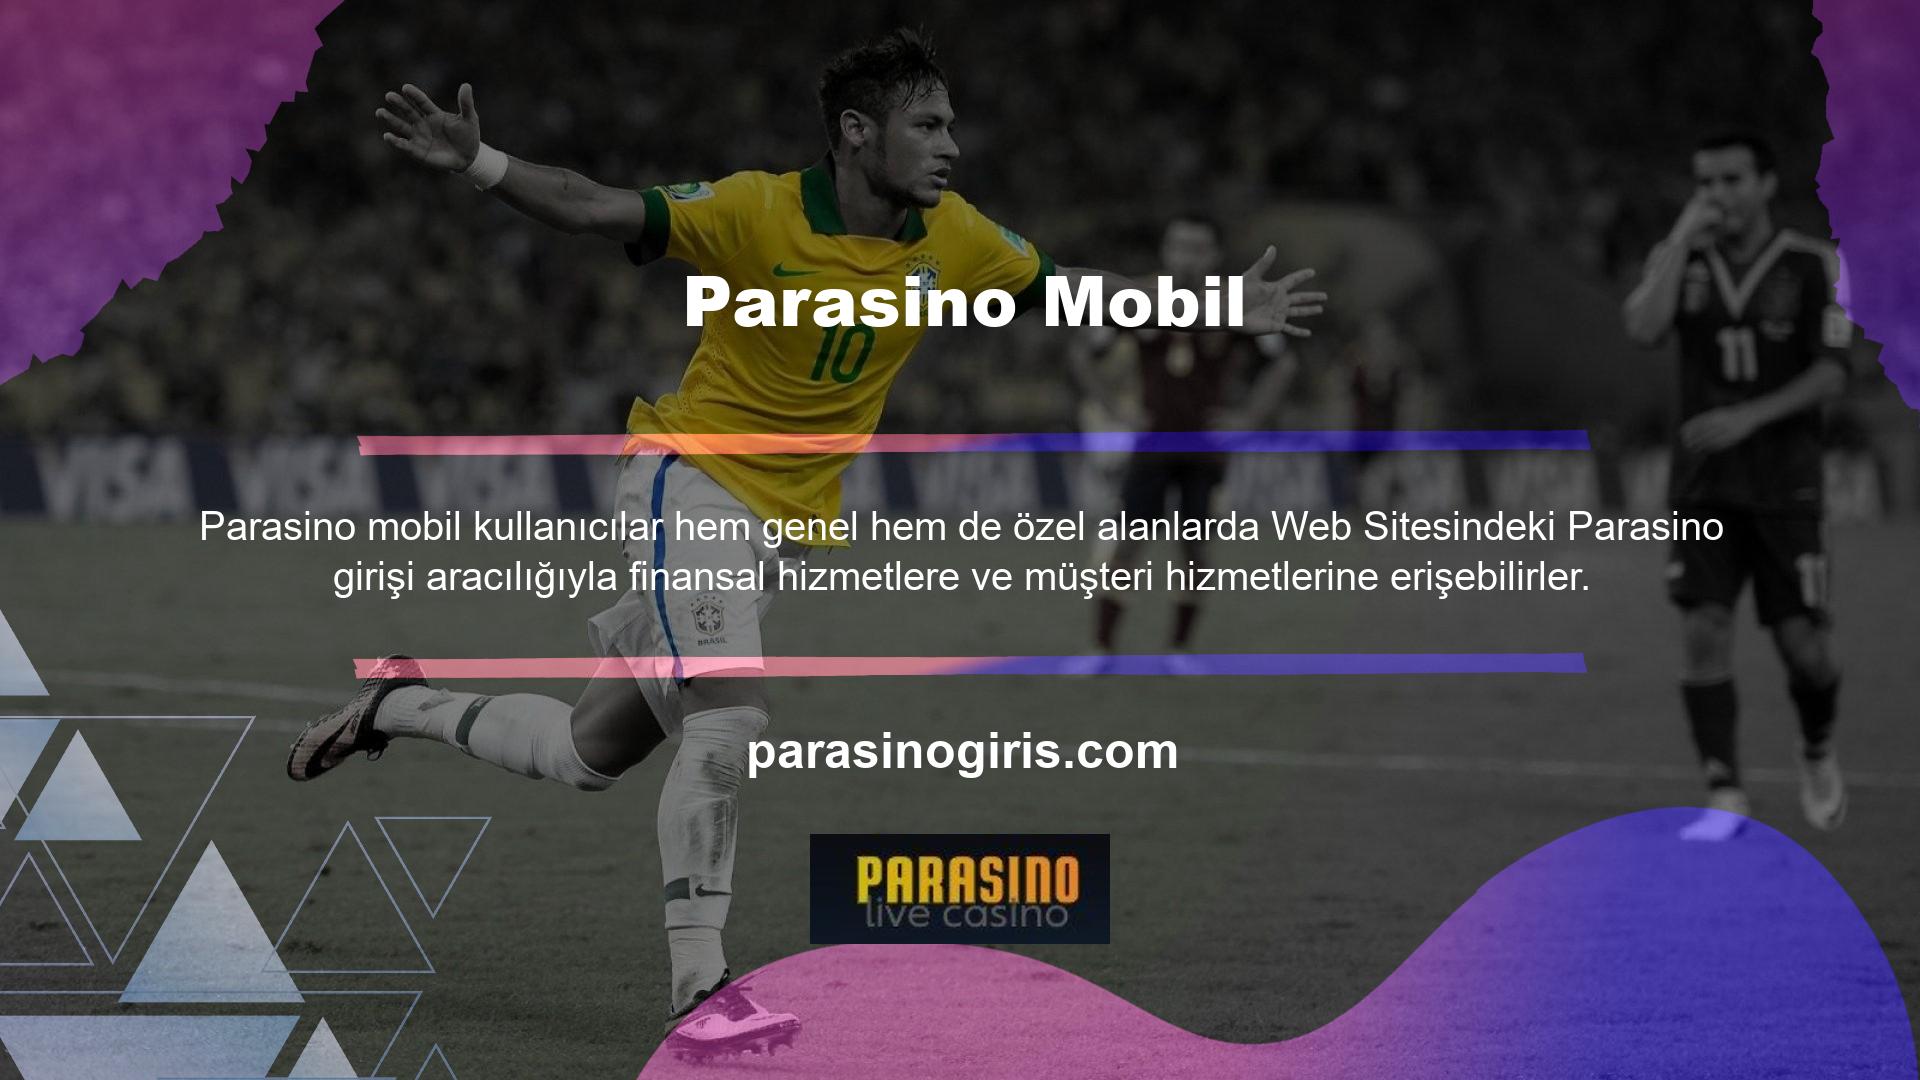 Parasino web sitesine, Parasino Mobil Erişimine kaydolduktan sonra mobil cihazınız veya bilgisayarınız aracılığıyla erişilebilir